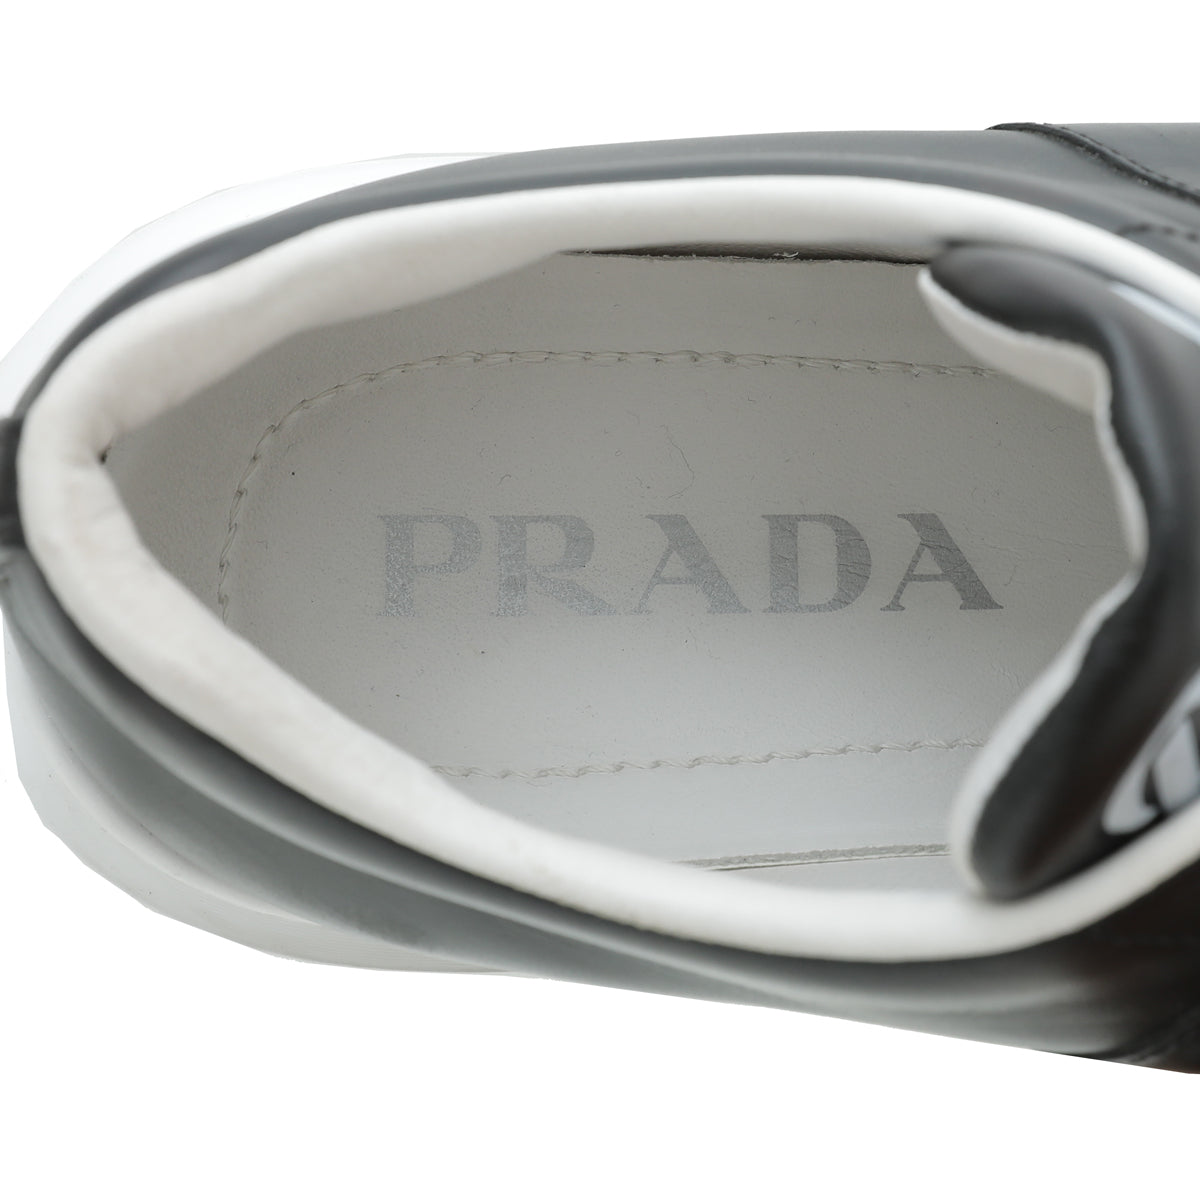 Prada Black Logo Sneaker 36